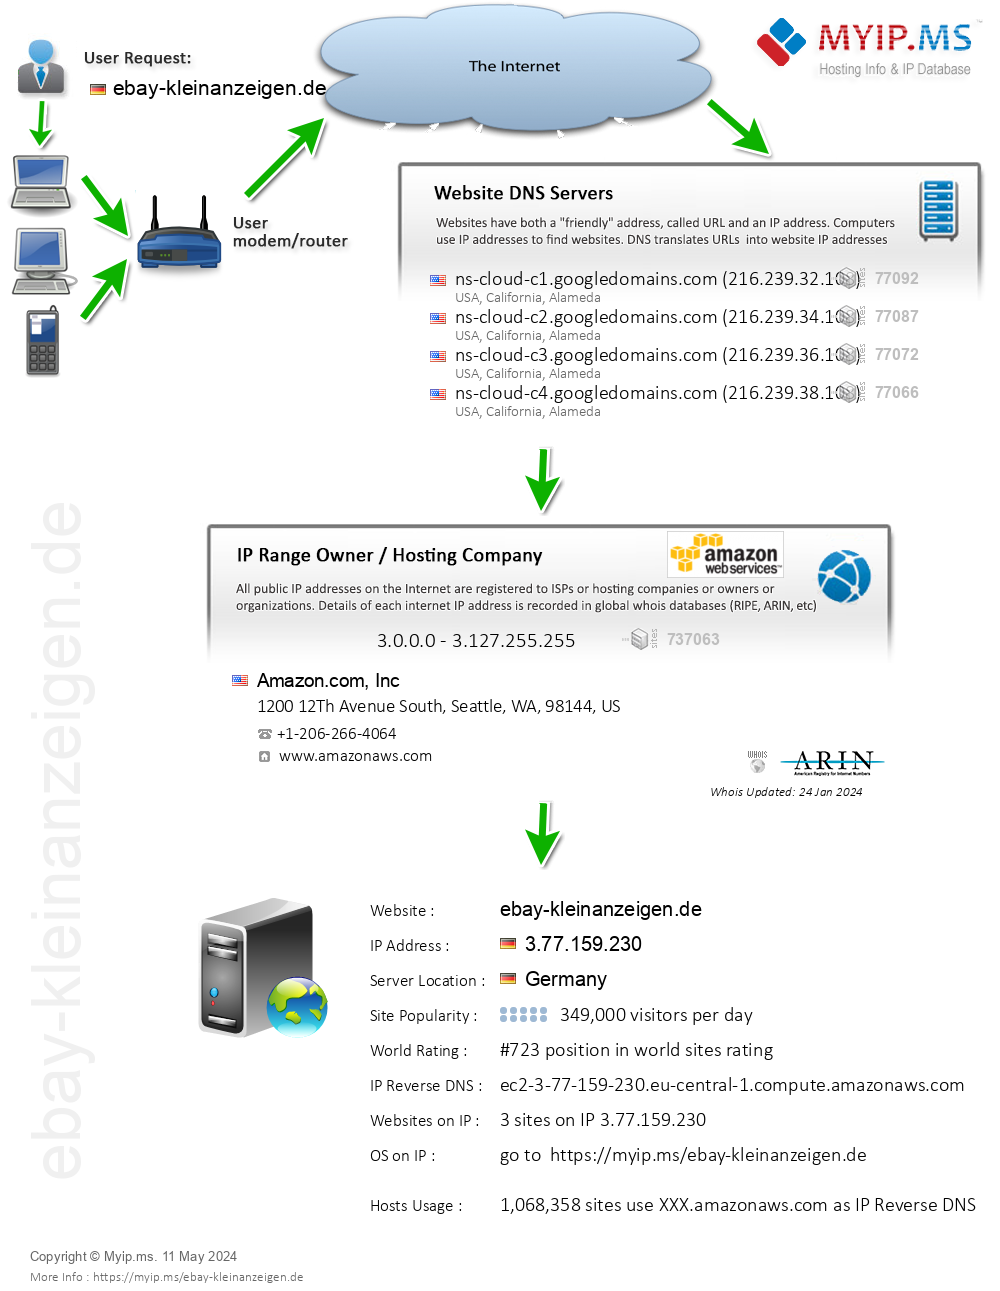 Ebay-kleinanzeigen.de - Website Hosting Visual IP Diagram